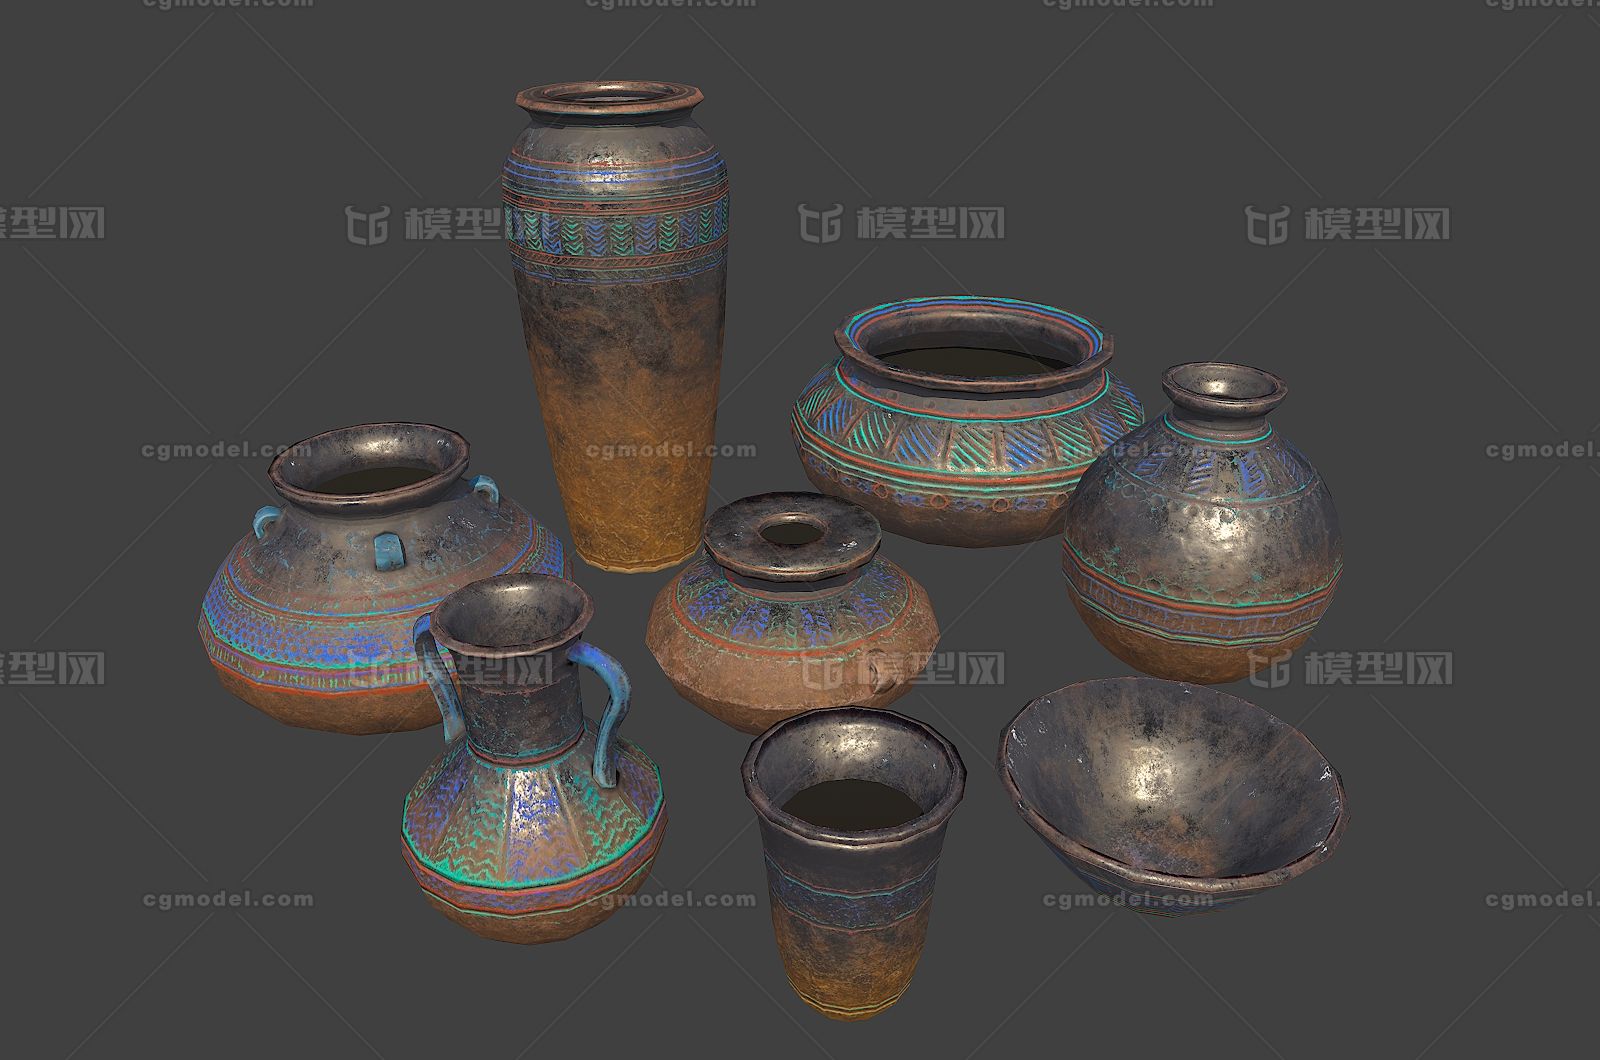 356 pbr次世代 陶罐 罐子 瓦罐 陶瓷 瓷器 陶土 原始 水壶 容器 埃及